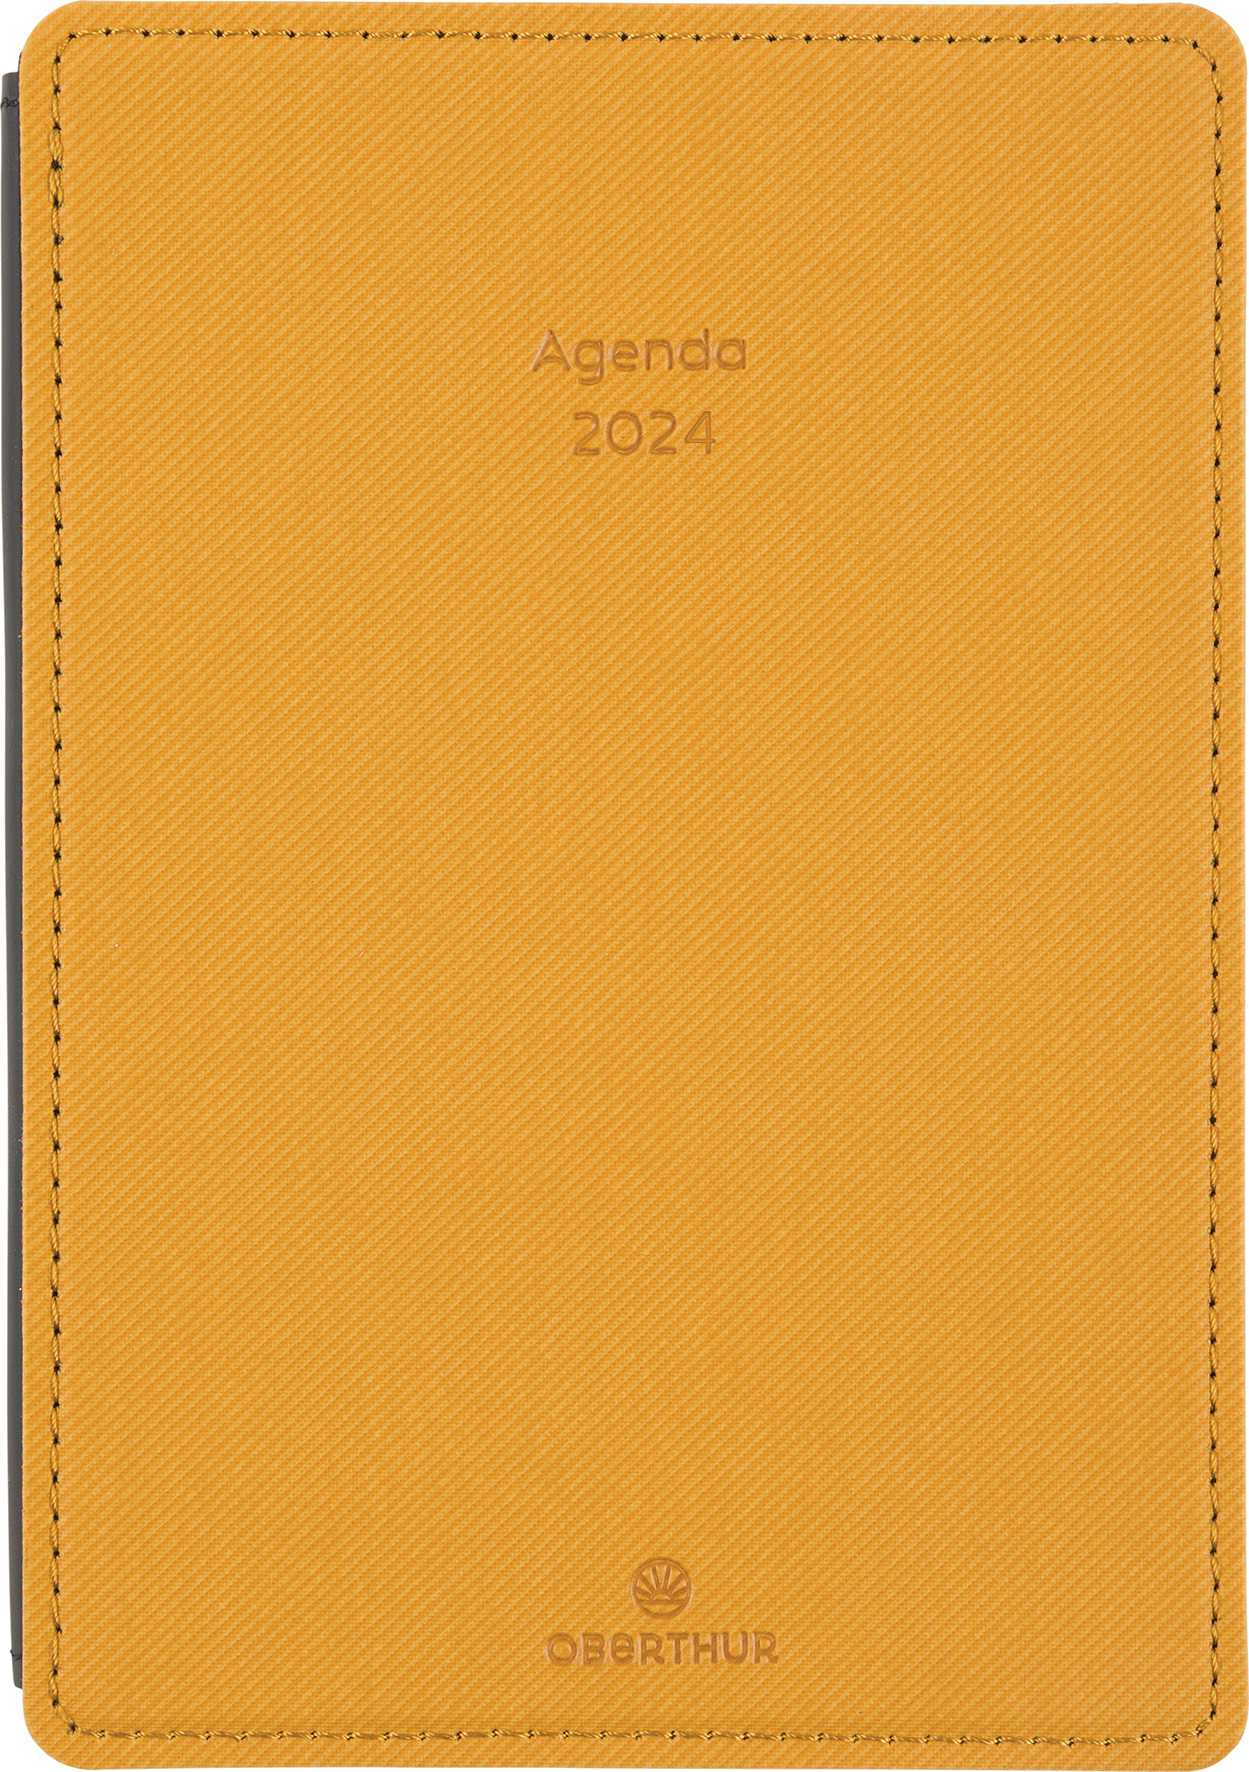 Agenda Stan - 1 semaine sur 2 pages - 11,5 x 16,5 cm - bleu canard -  Oberthur